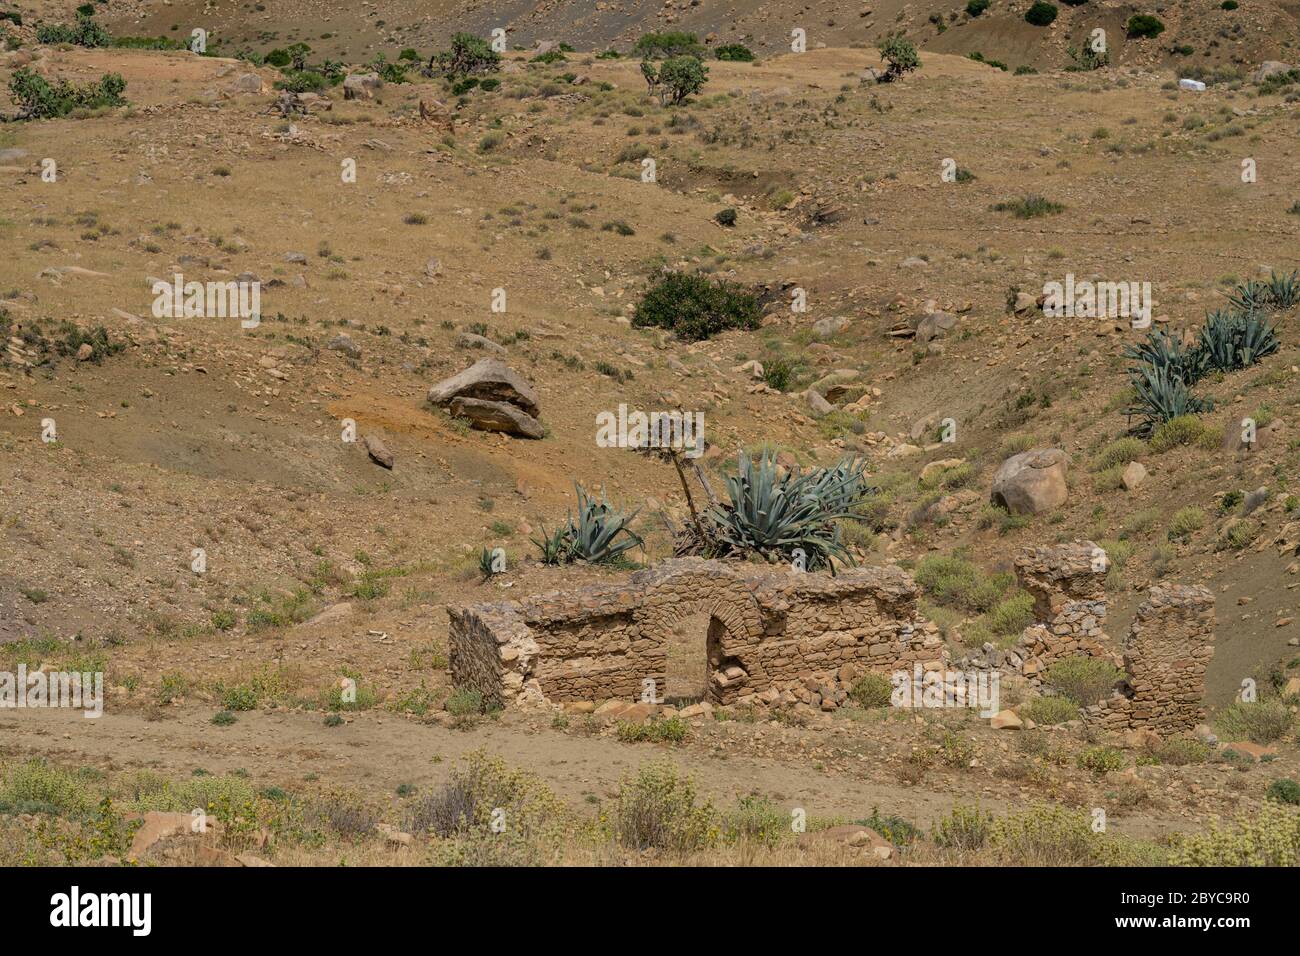 The abandonned berber village of Zriba, Tunisia Stock Photo